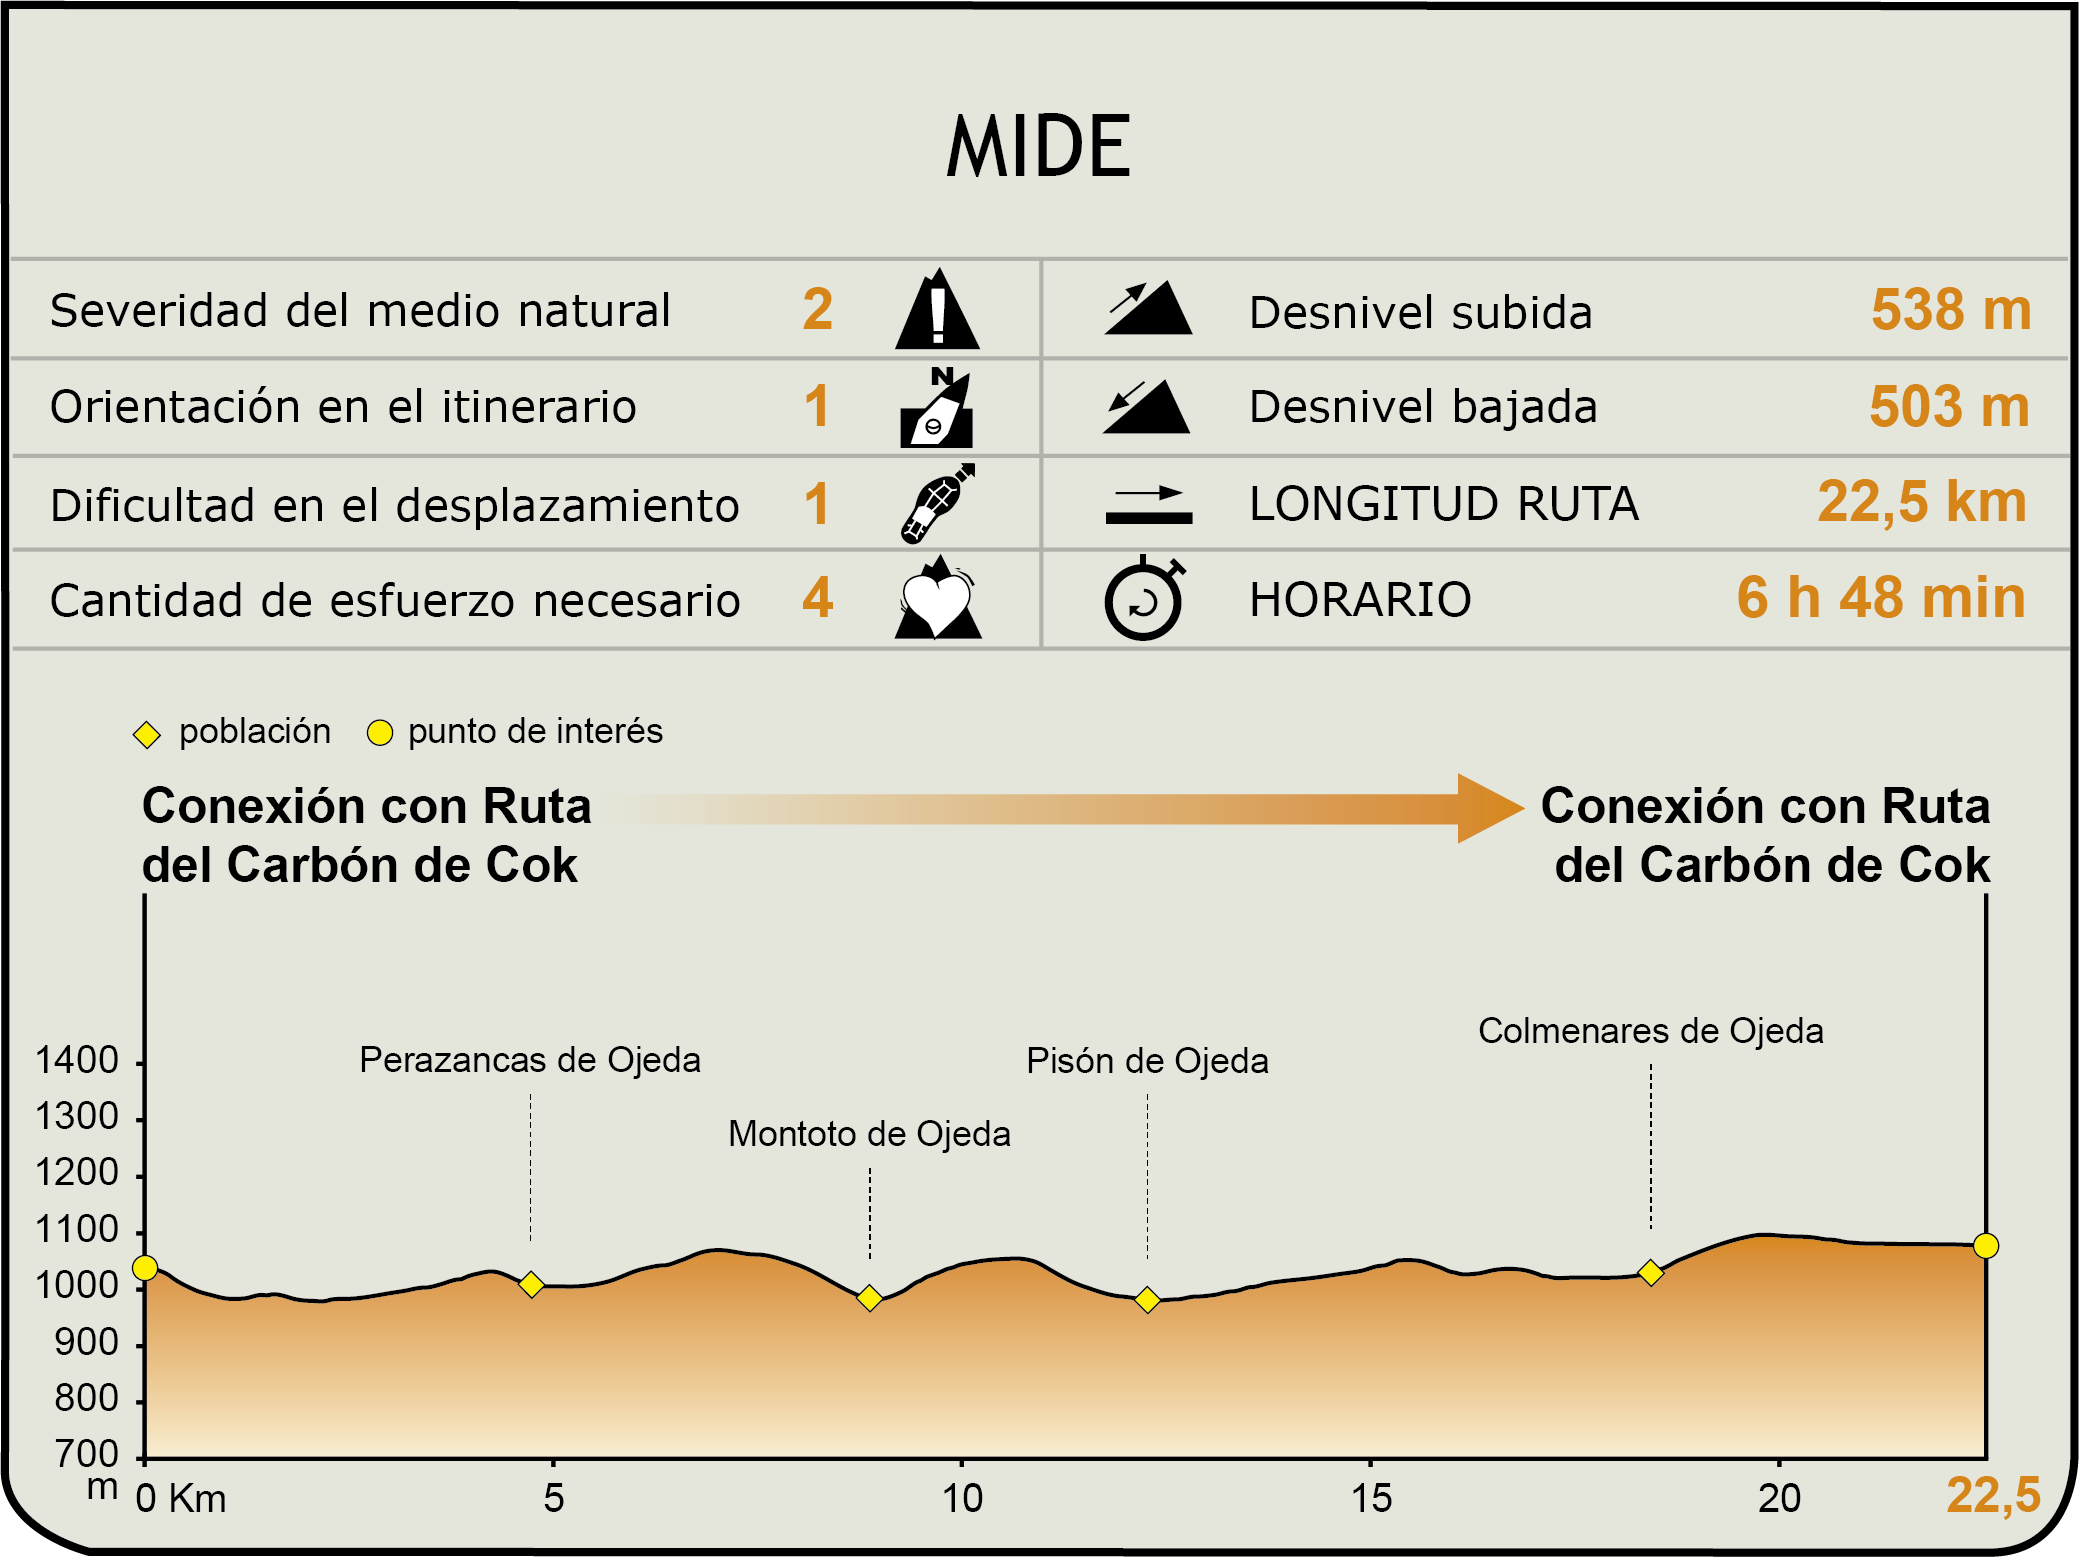 MIDE. Camino Natural del Románico Palentino. Alternativa Perazancas de Ojeda a Dehesa de Montejo